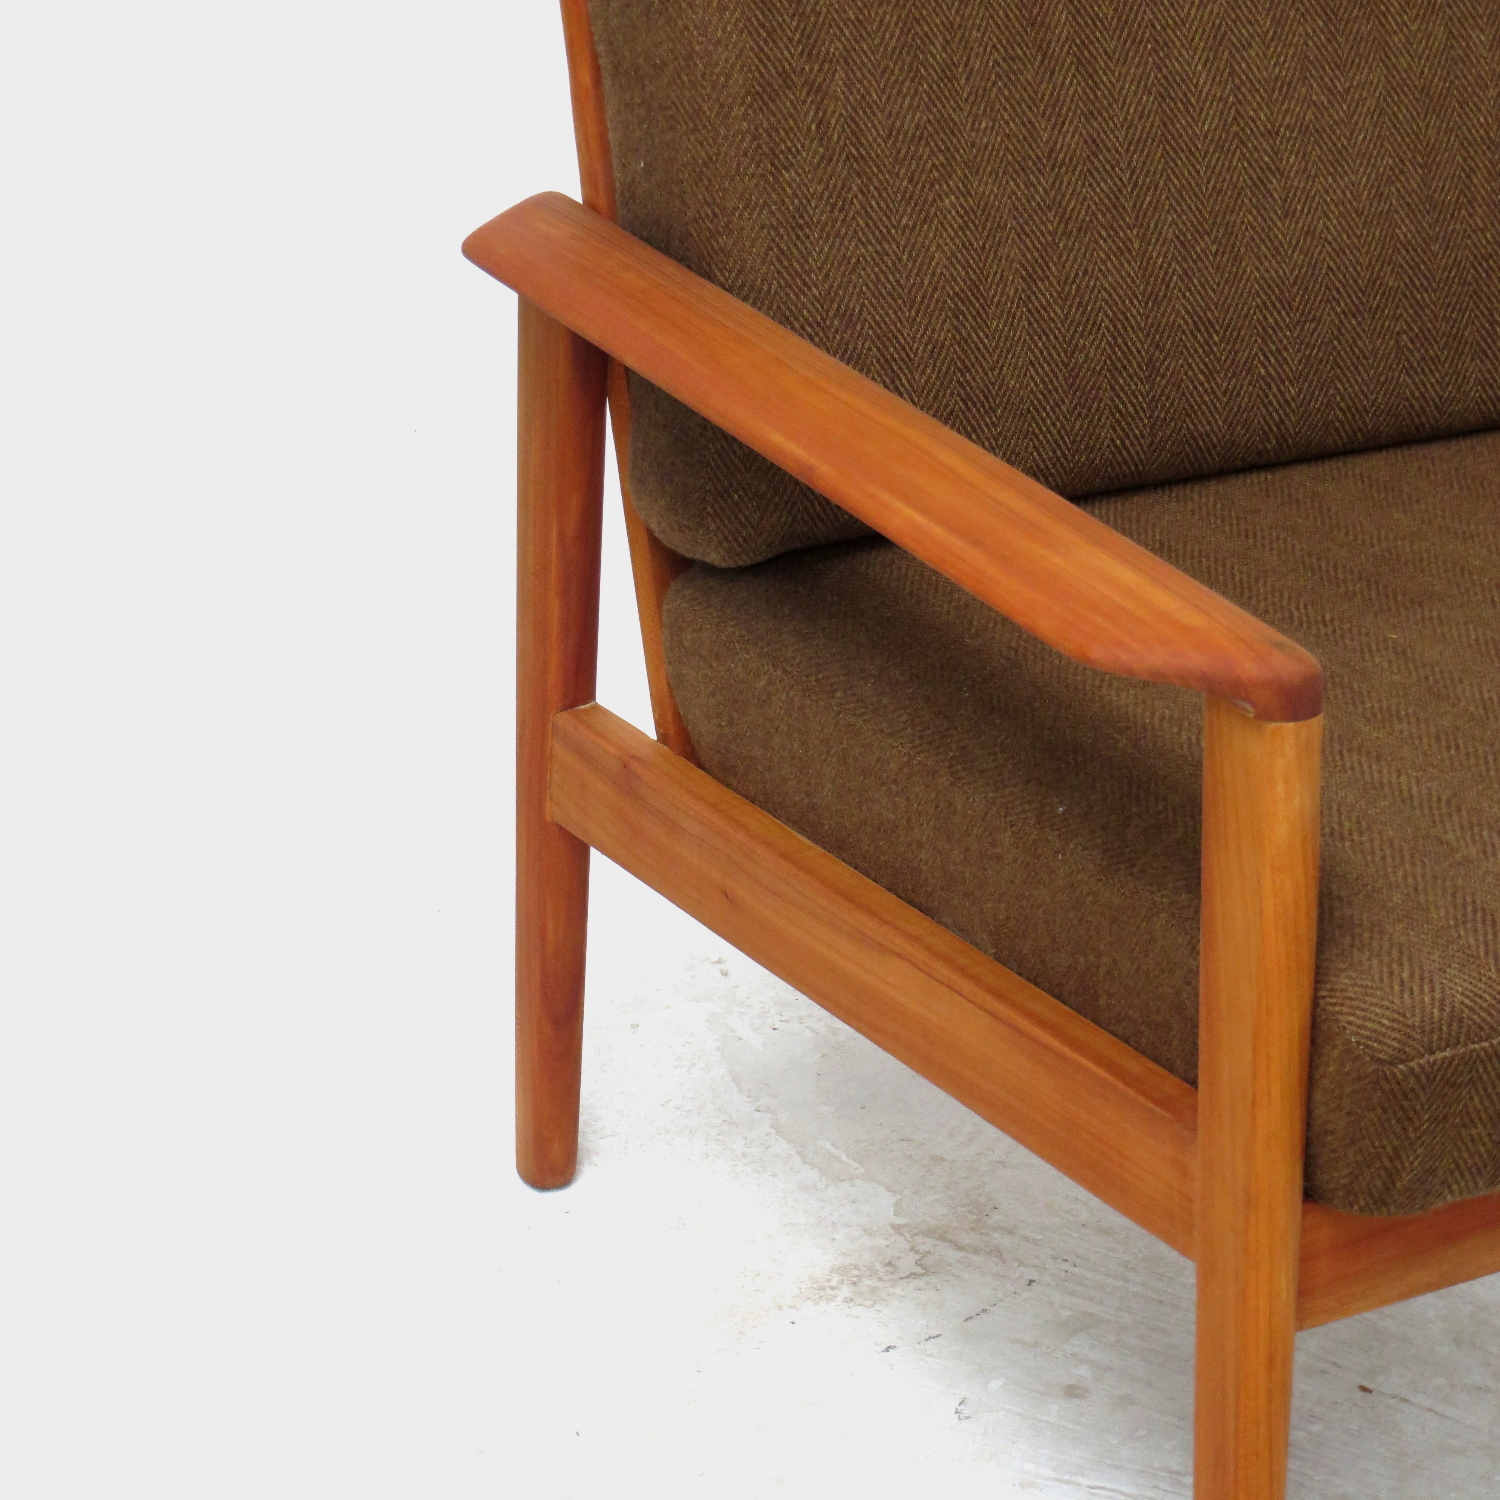 Detailfoto van de houten armleuning van één van de twee vintage design fauteuils